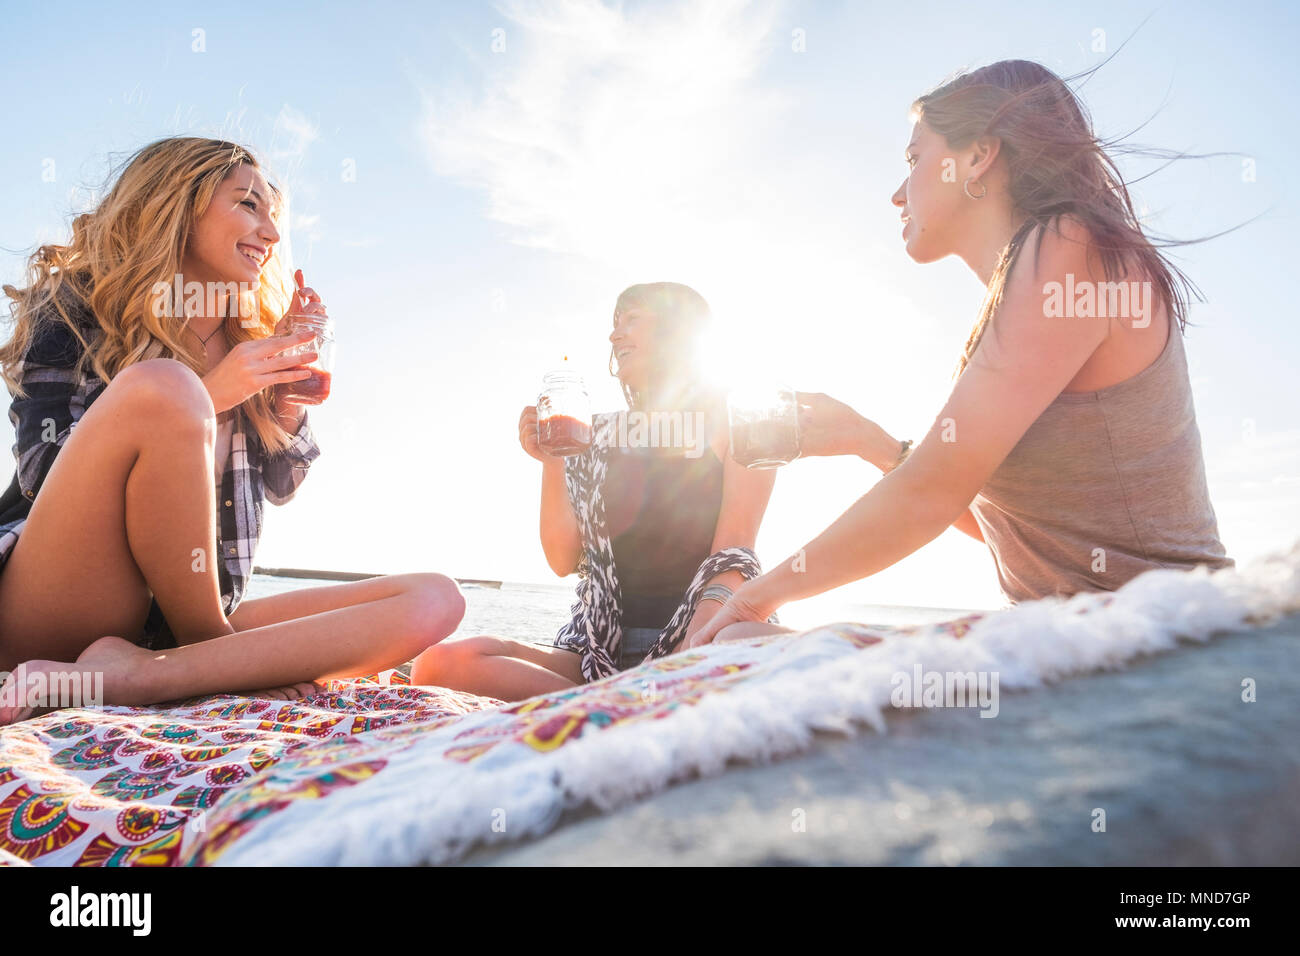 Groupe de jeunes femmes ami boire ensemble un jus de fruit sur un rock beach à Ténérife. Relation pour une équipe à l'ejoy locations et de bonheur. Banque D'Images